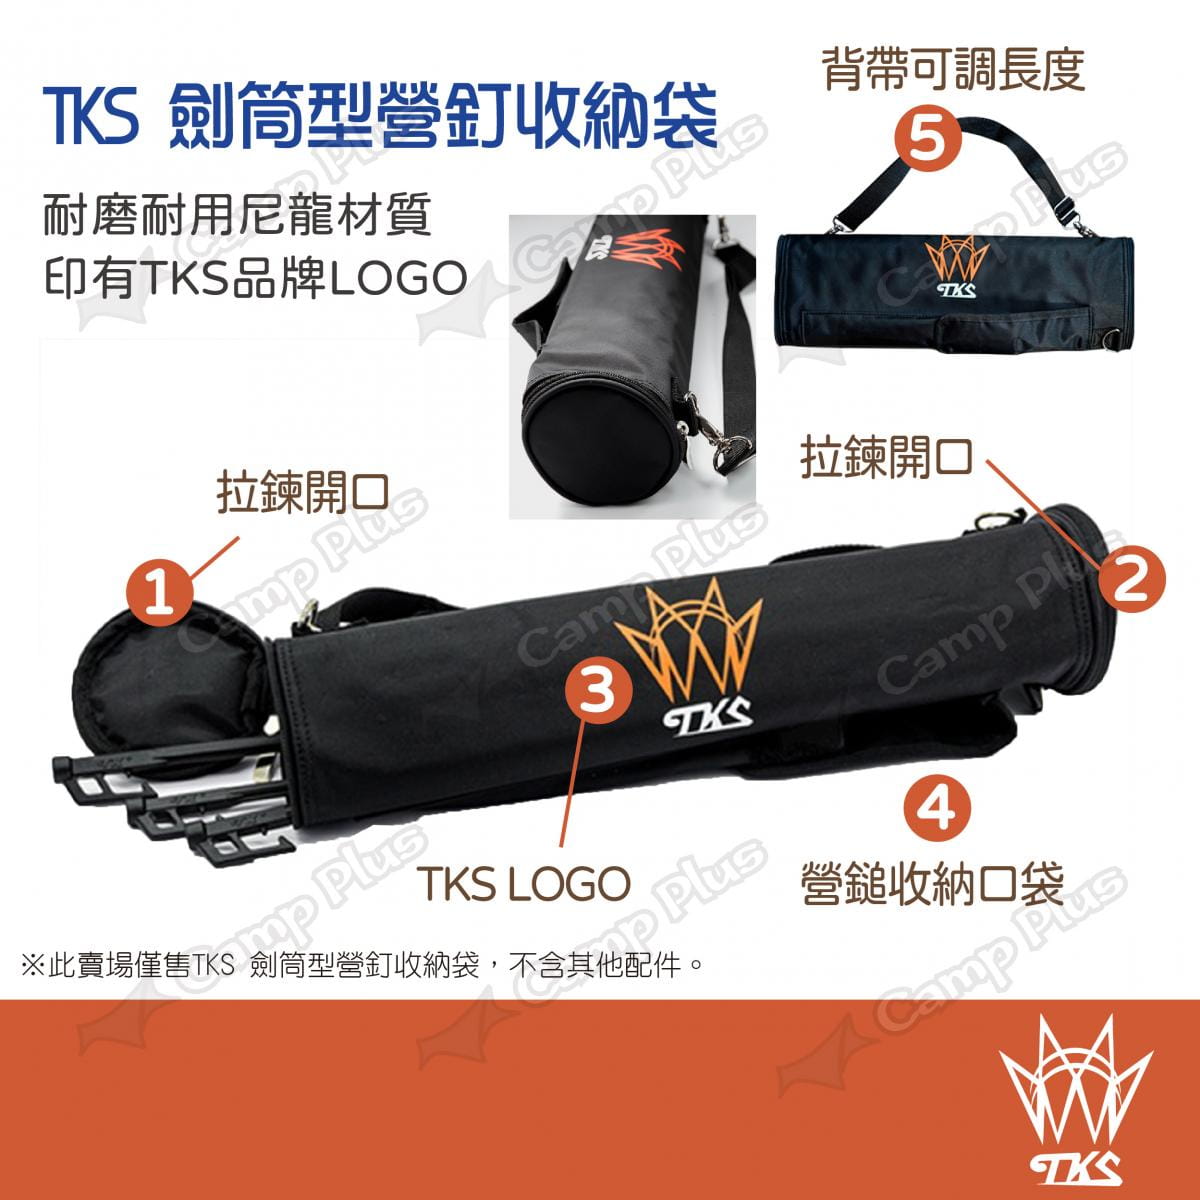 【TKS】劍筒型營釘收納袋 TK-BAG01 (悠遊戶外) 2